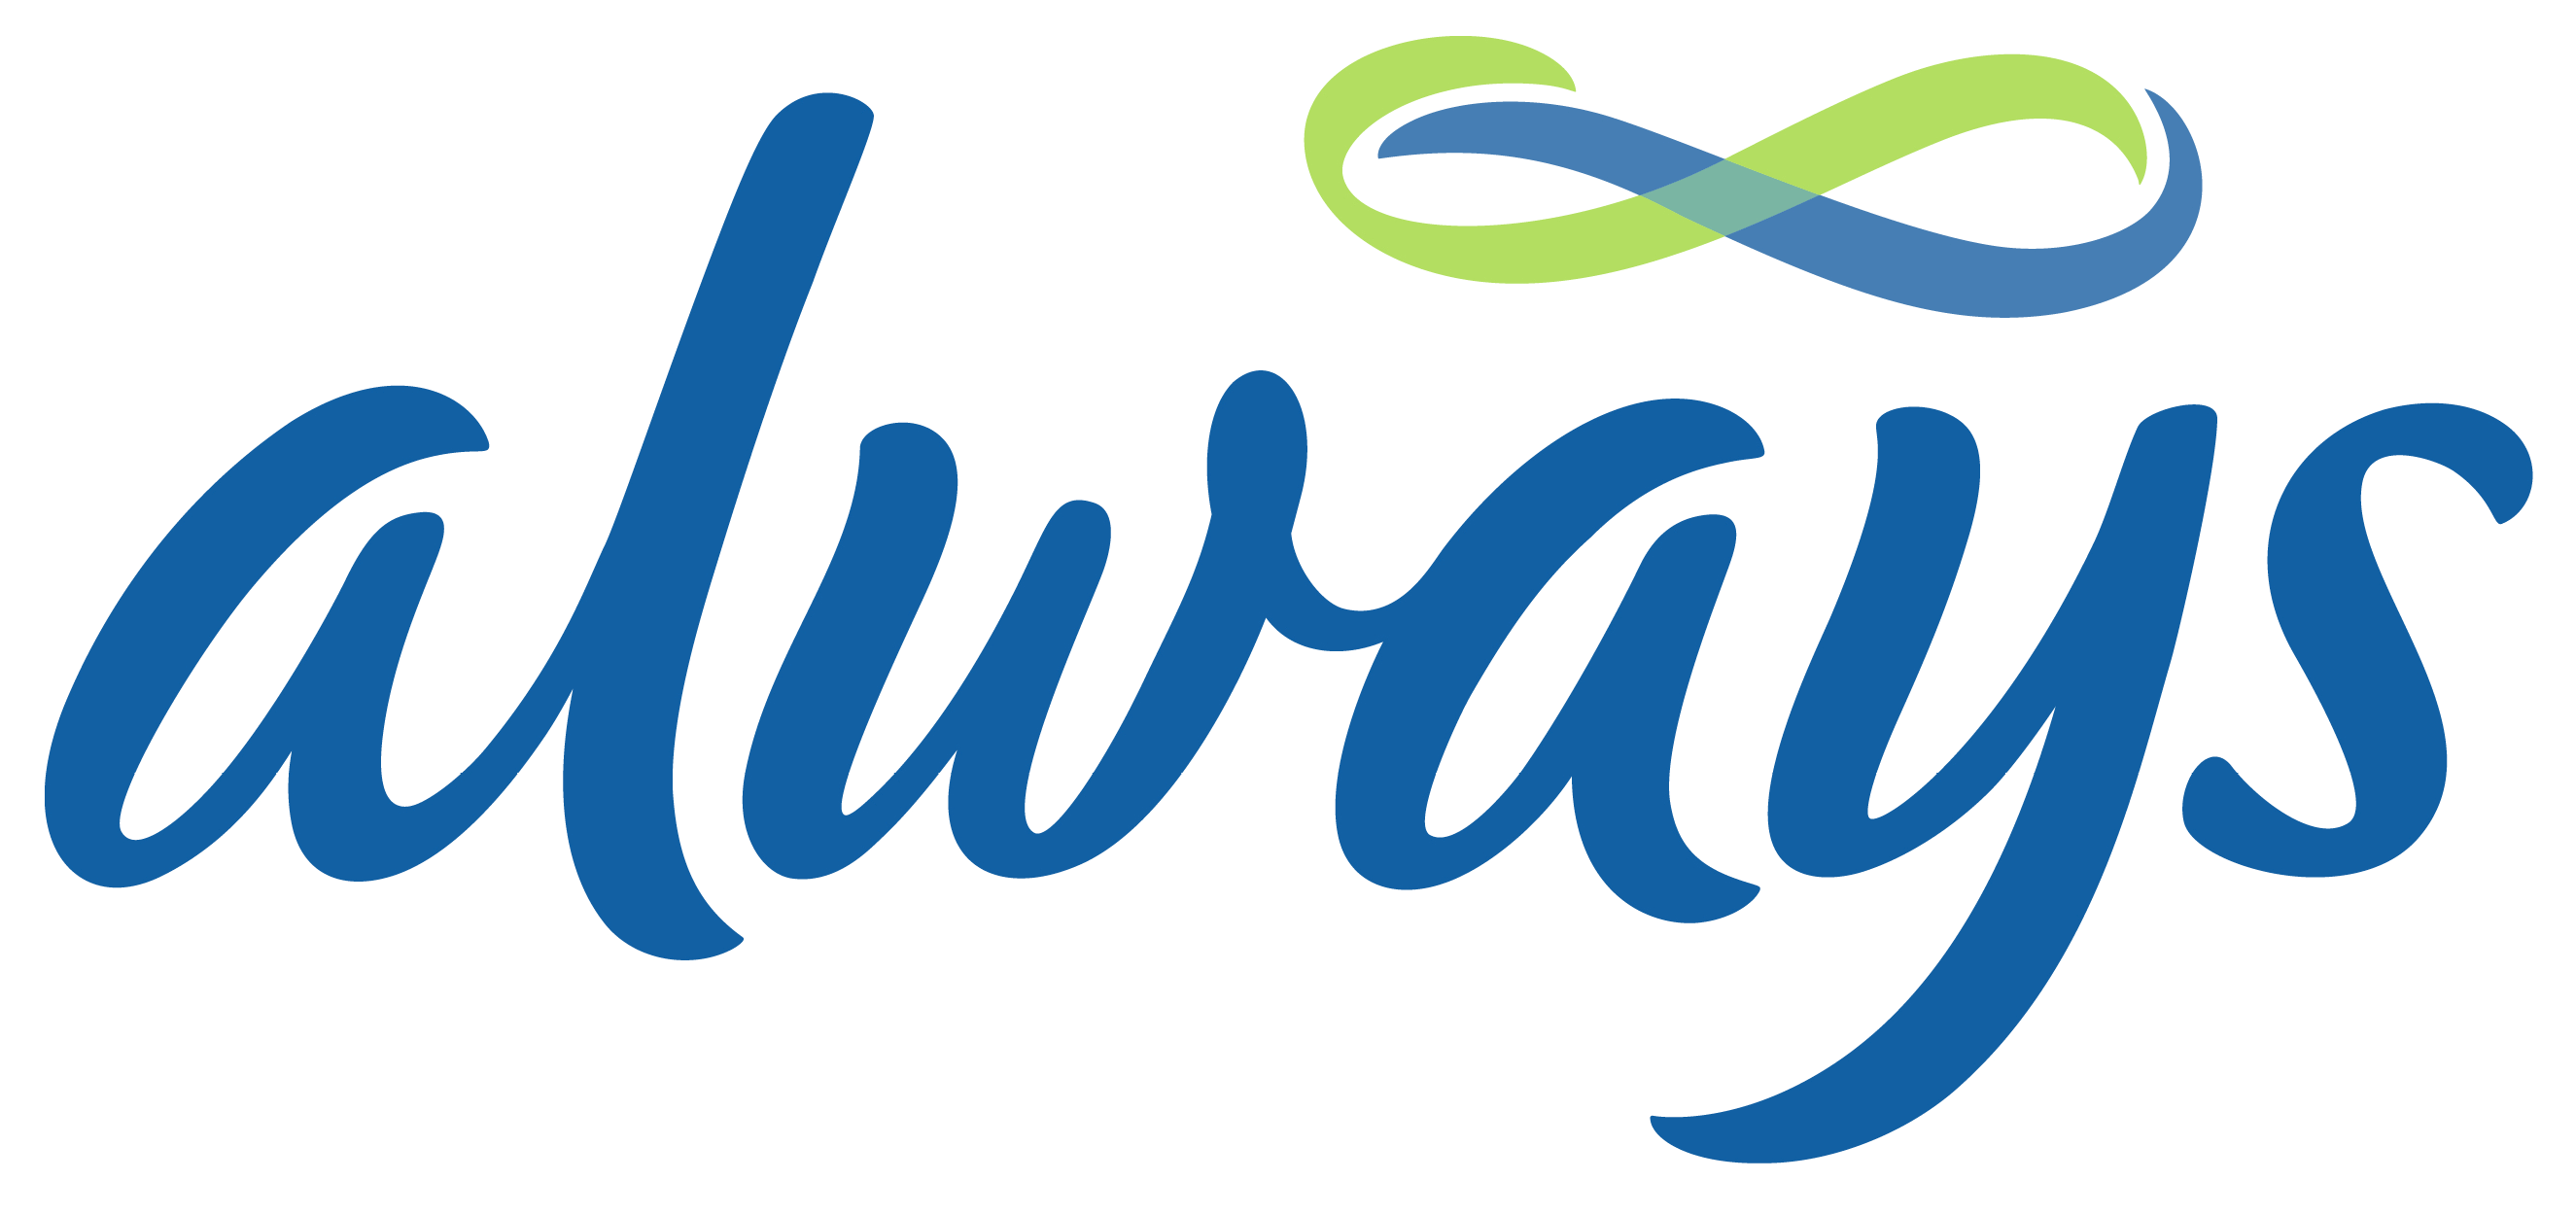 Always Logo - Always – Logos Download